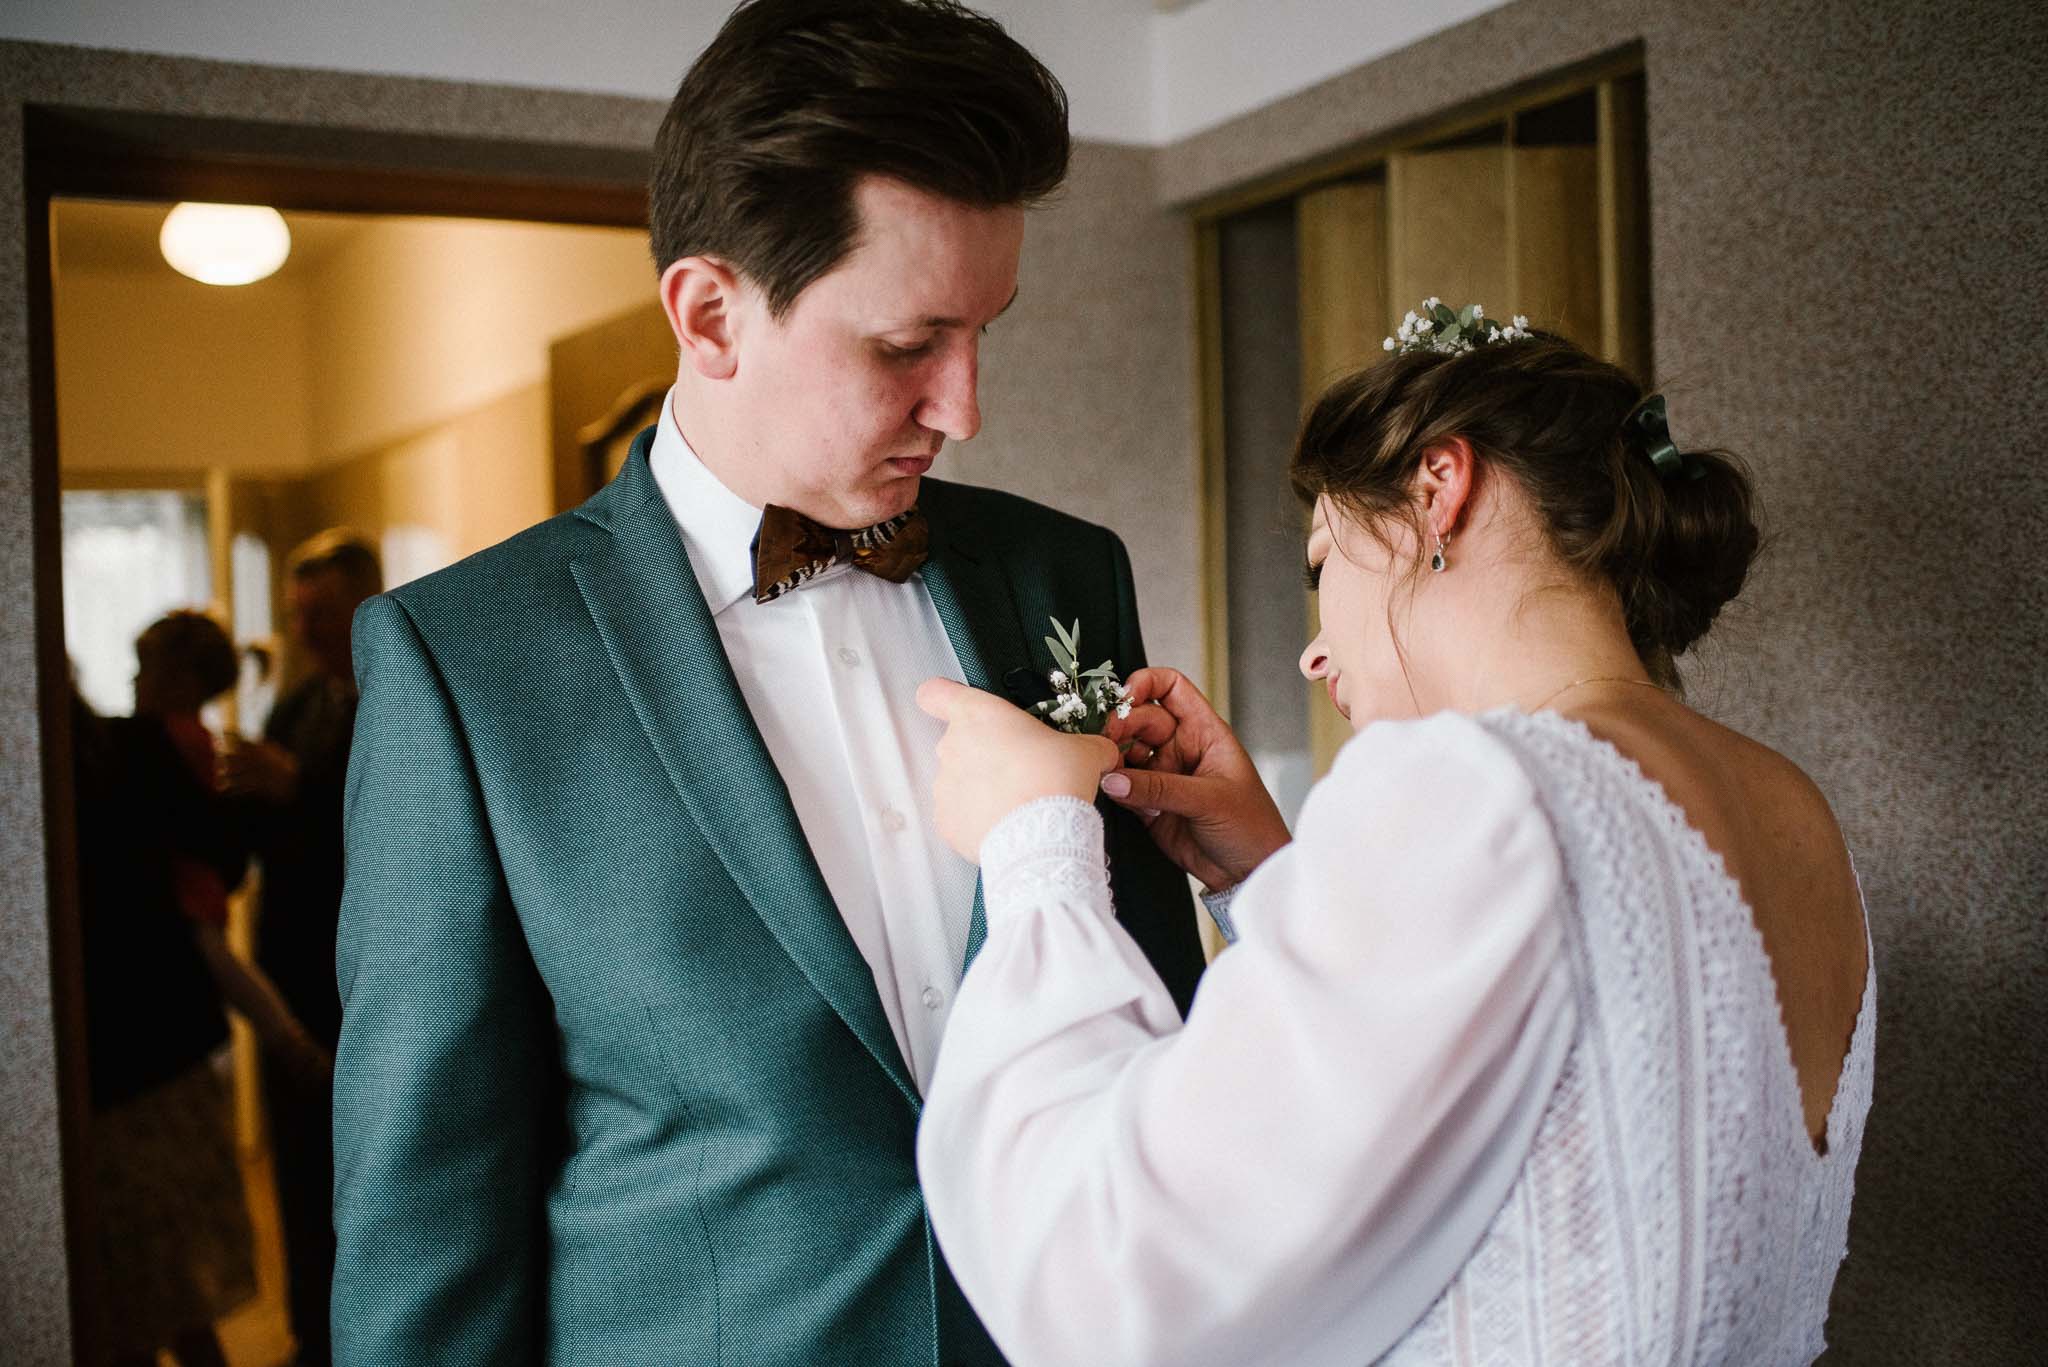 Panna młoda przypina panu młodemu kwiatek do butonierki - sesja ślubna reportaż Żuczki Inowrocław